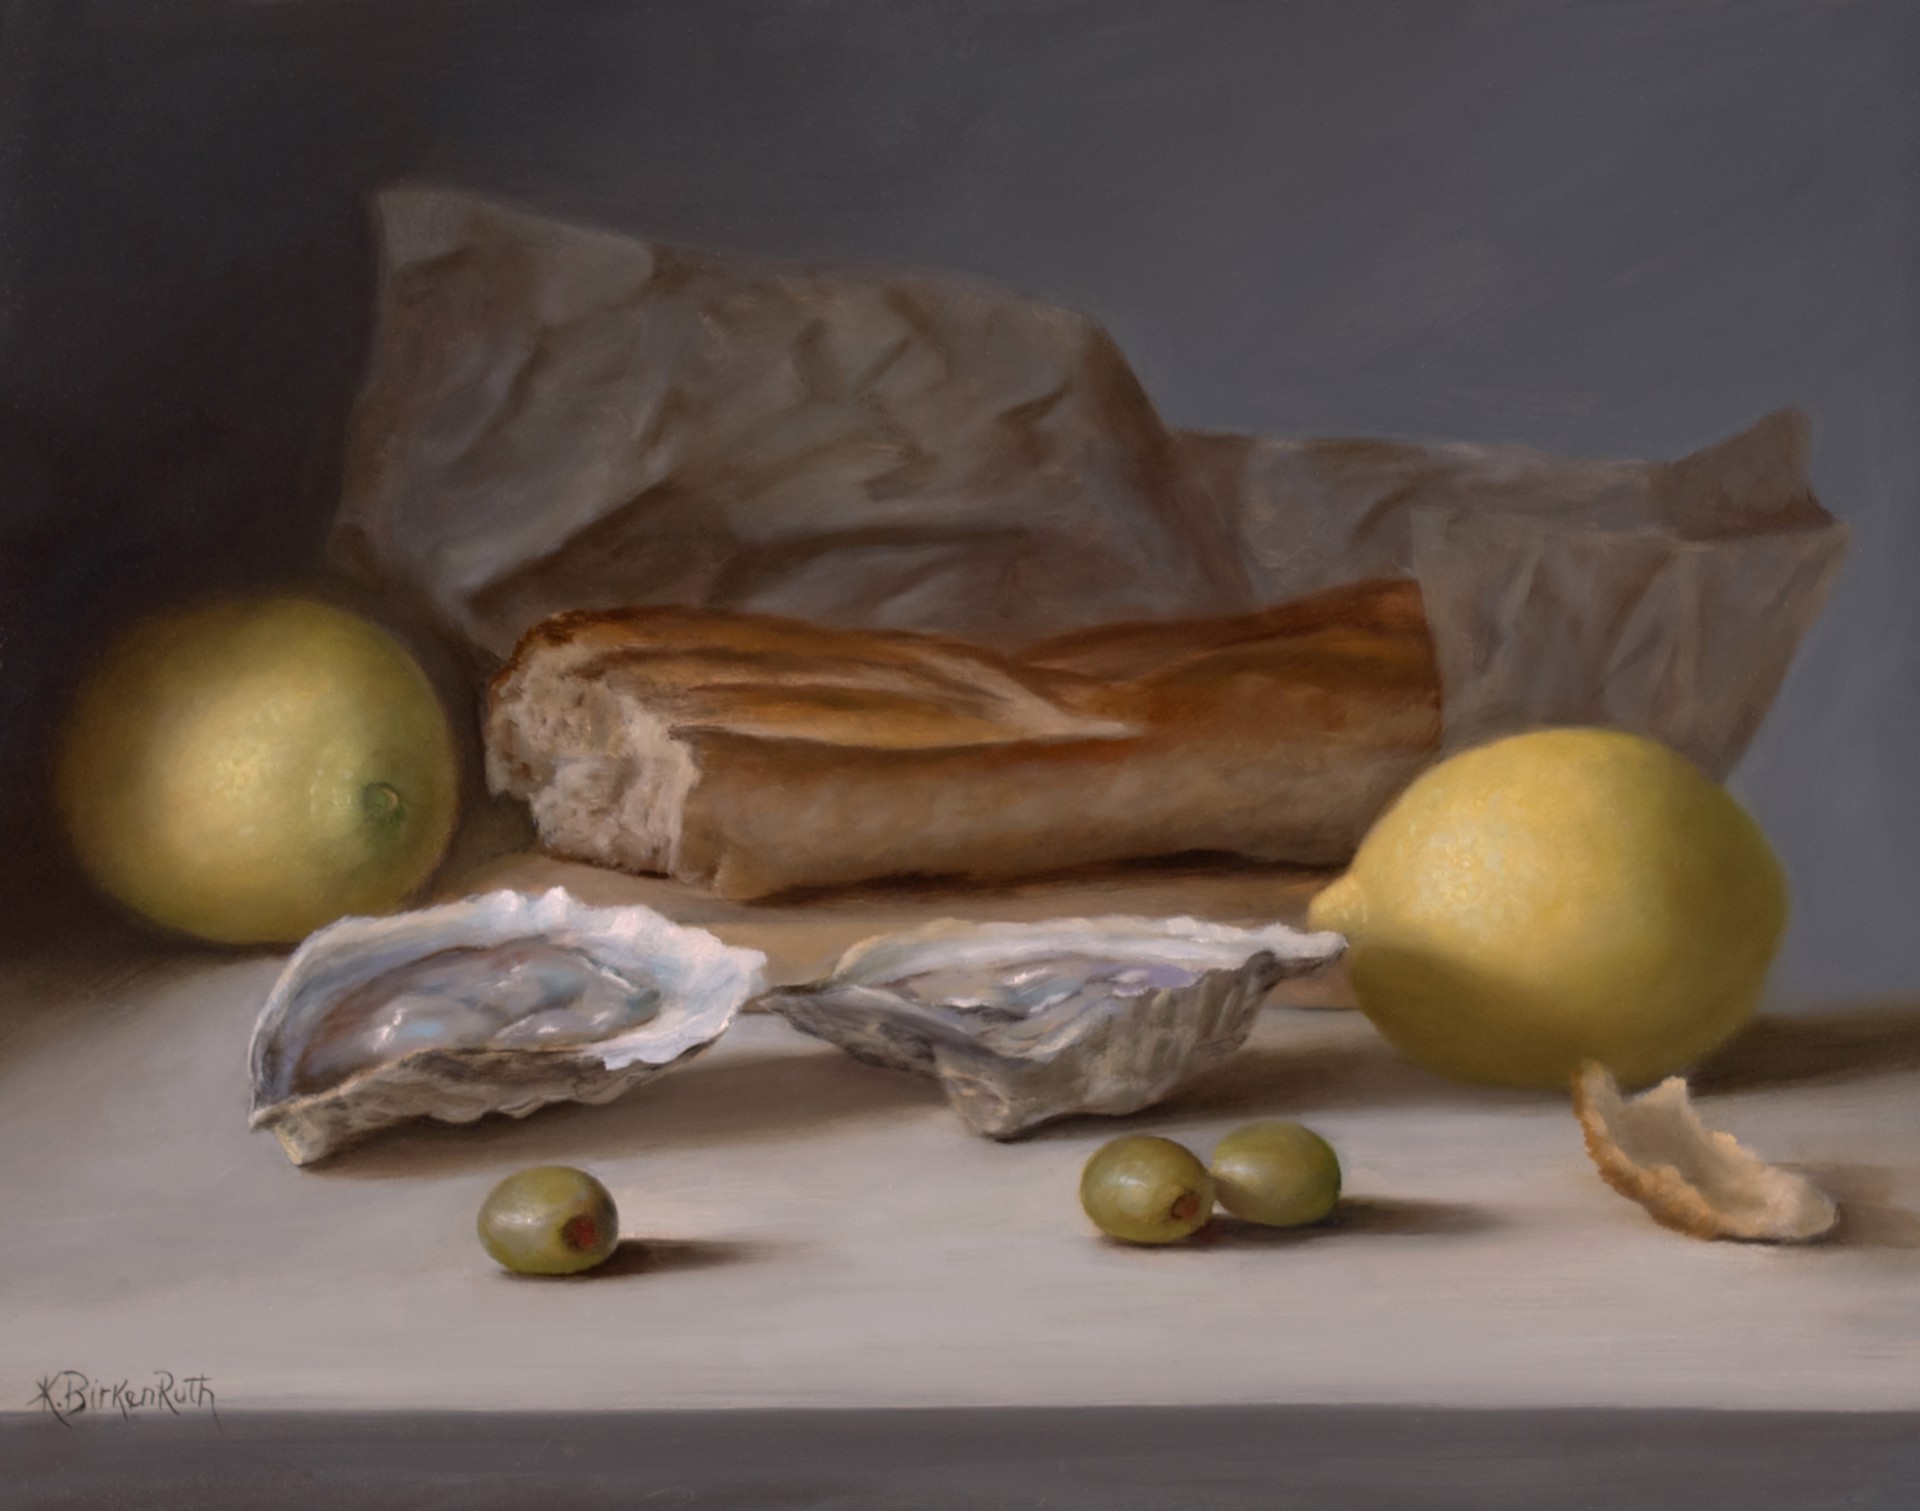 Oyster Snack by Kelly Birkenruth